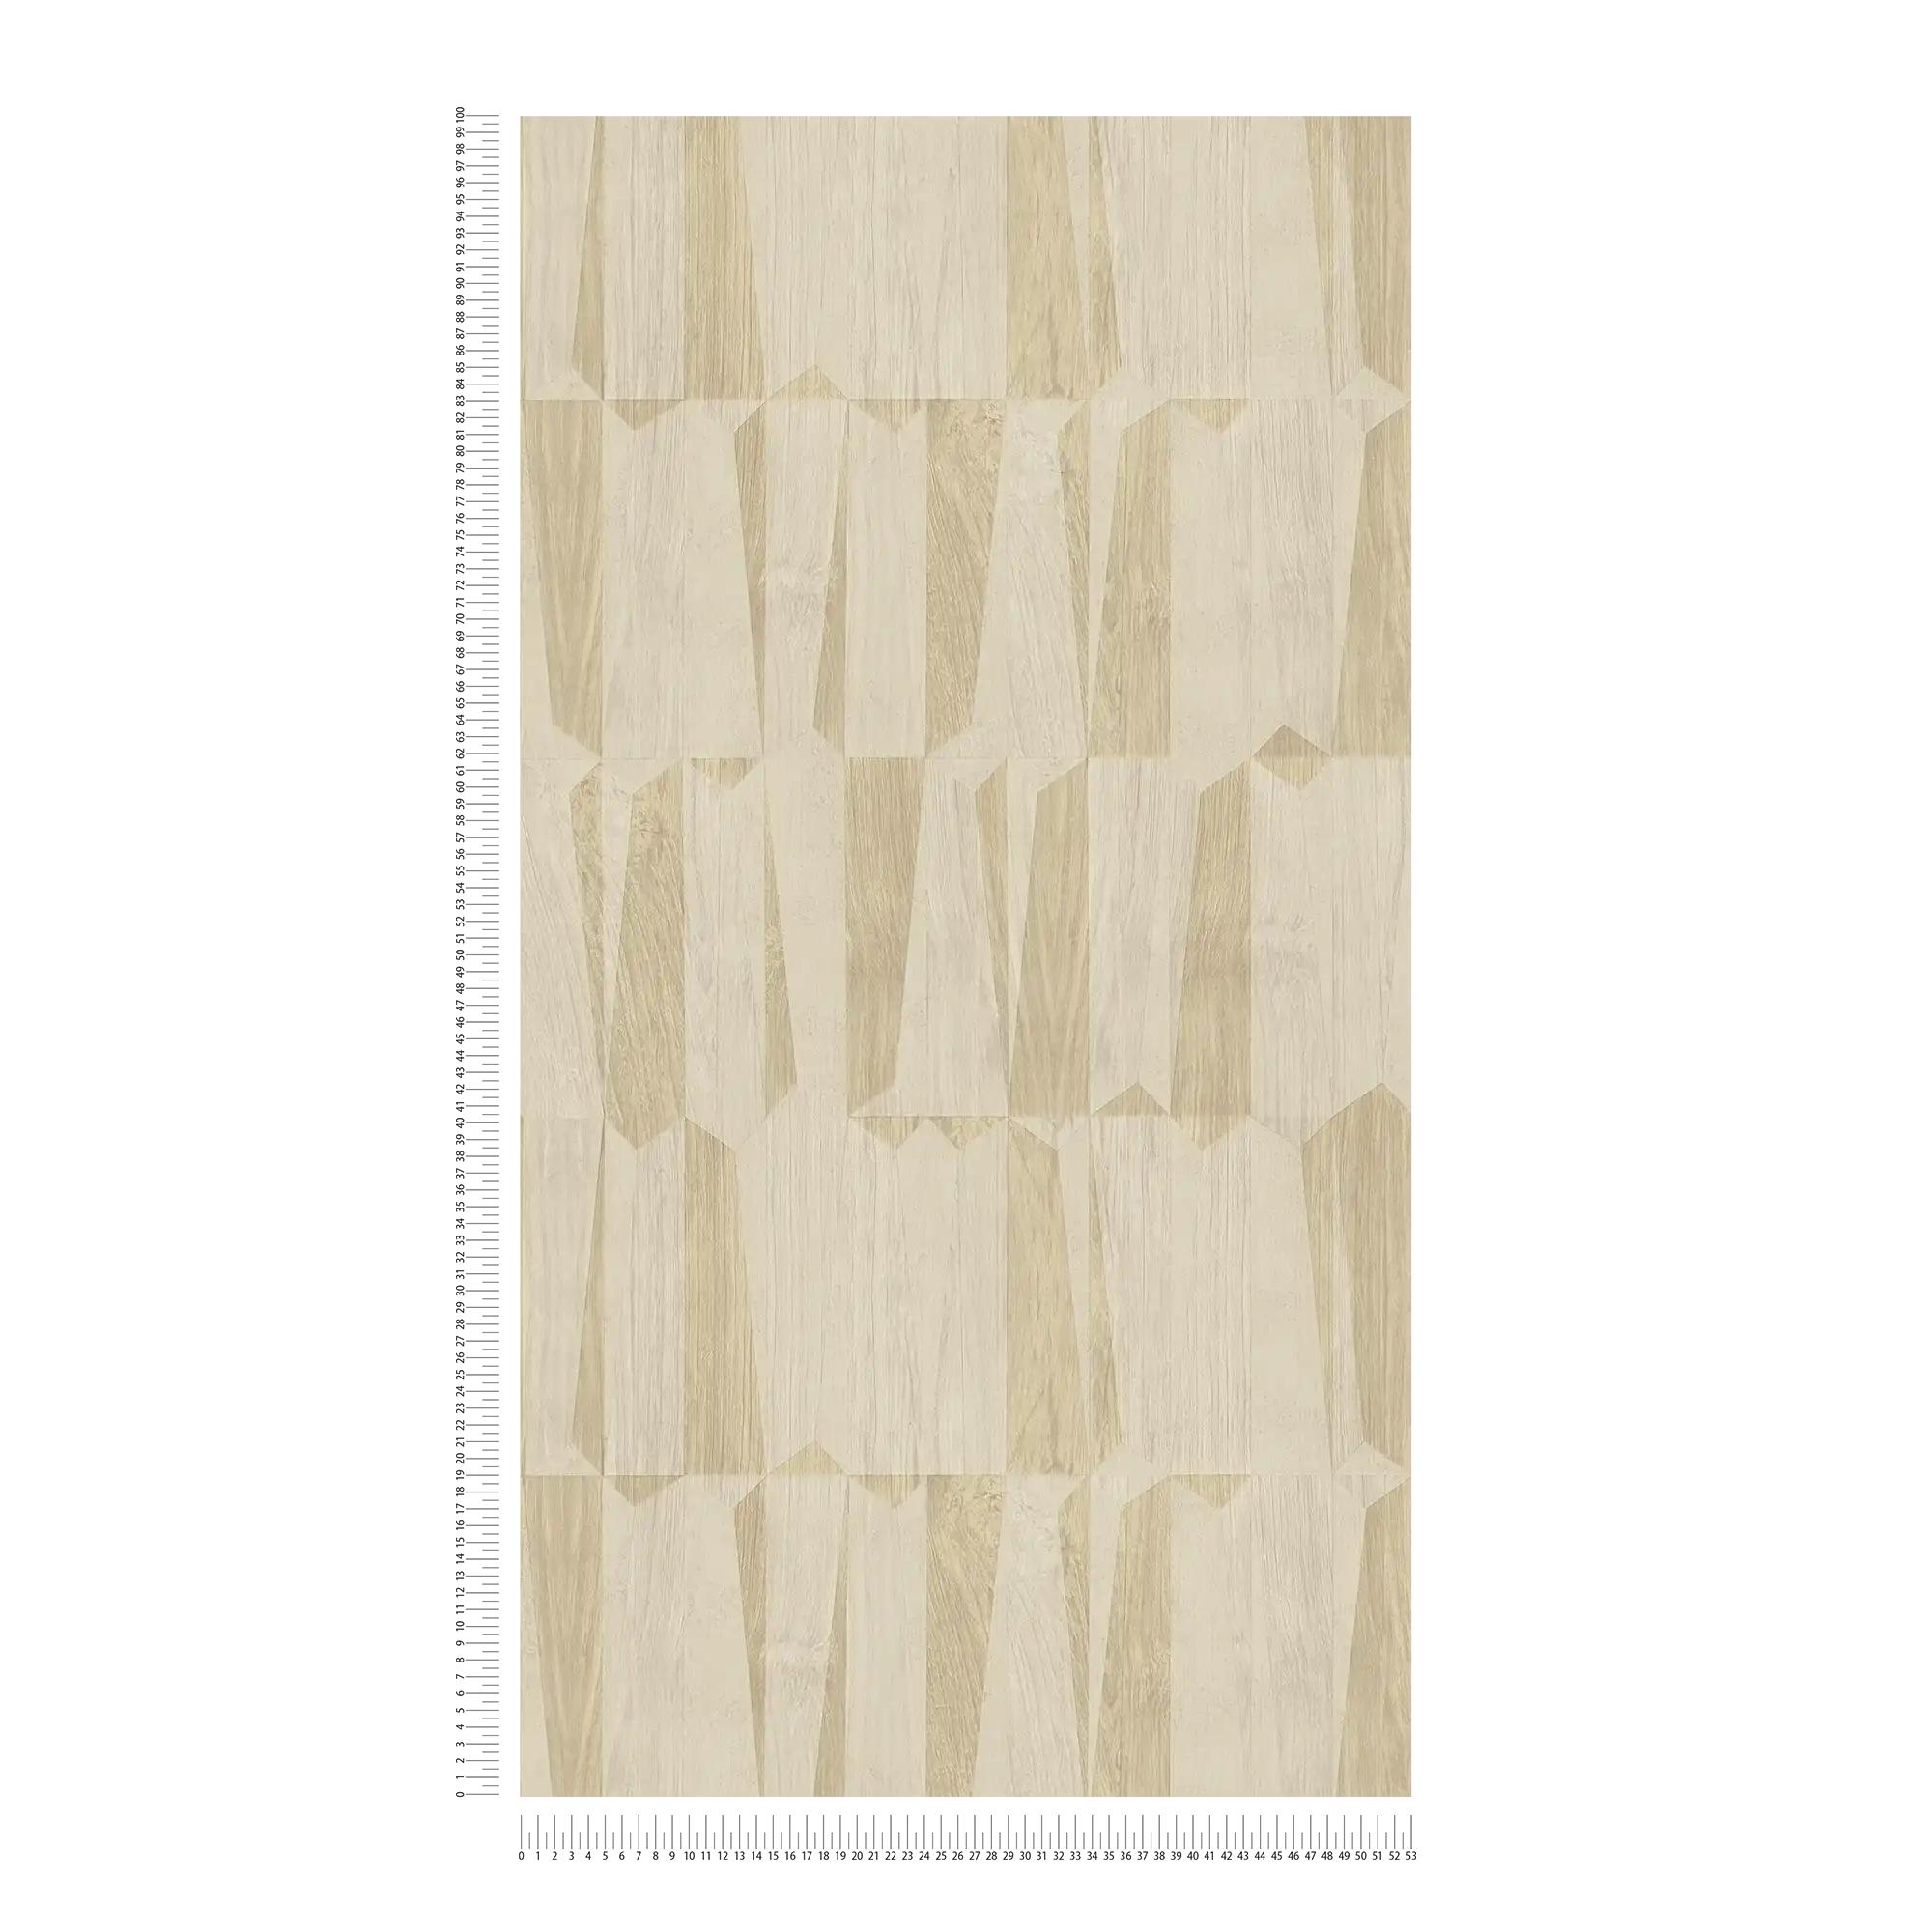             Metallic wallpaper with wood look in facet pattern - beige, grey
        